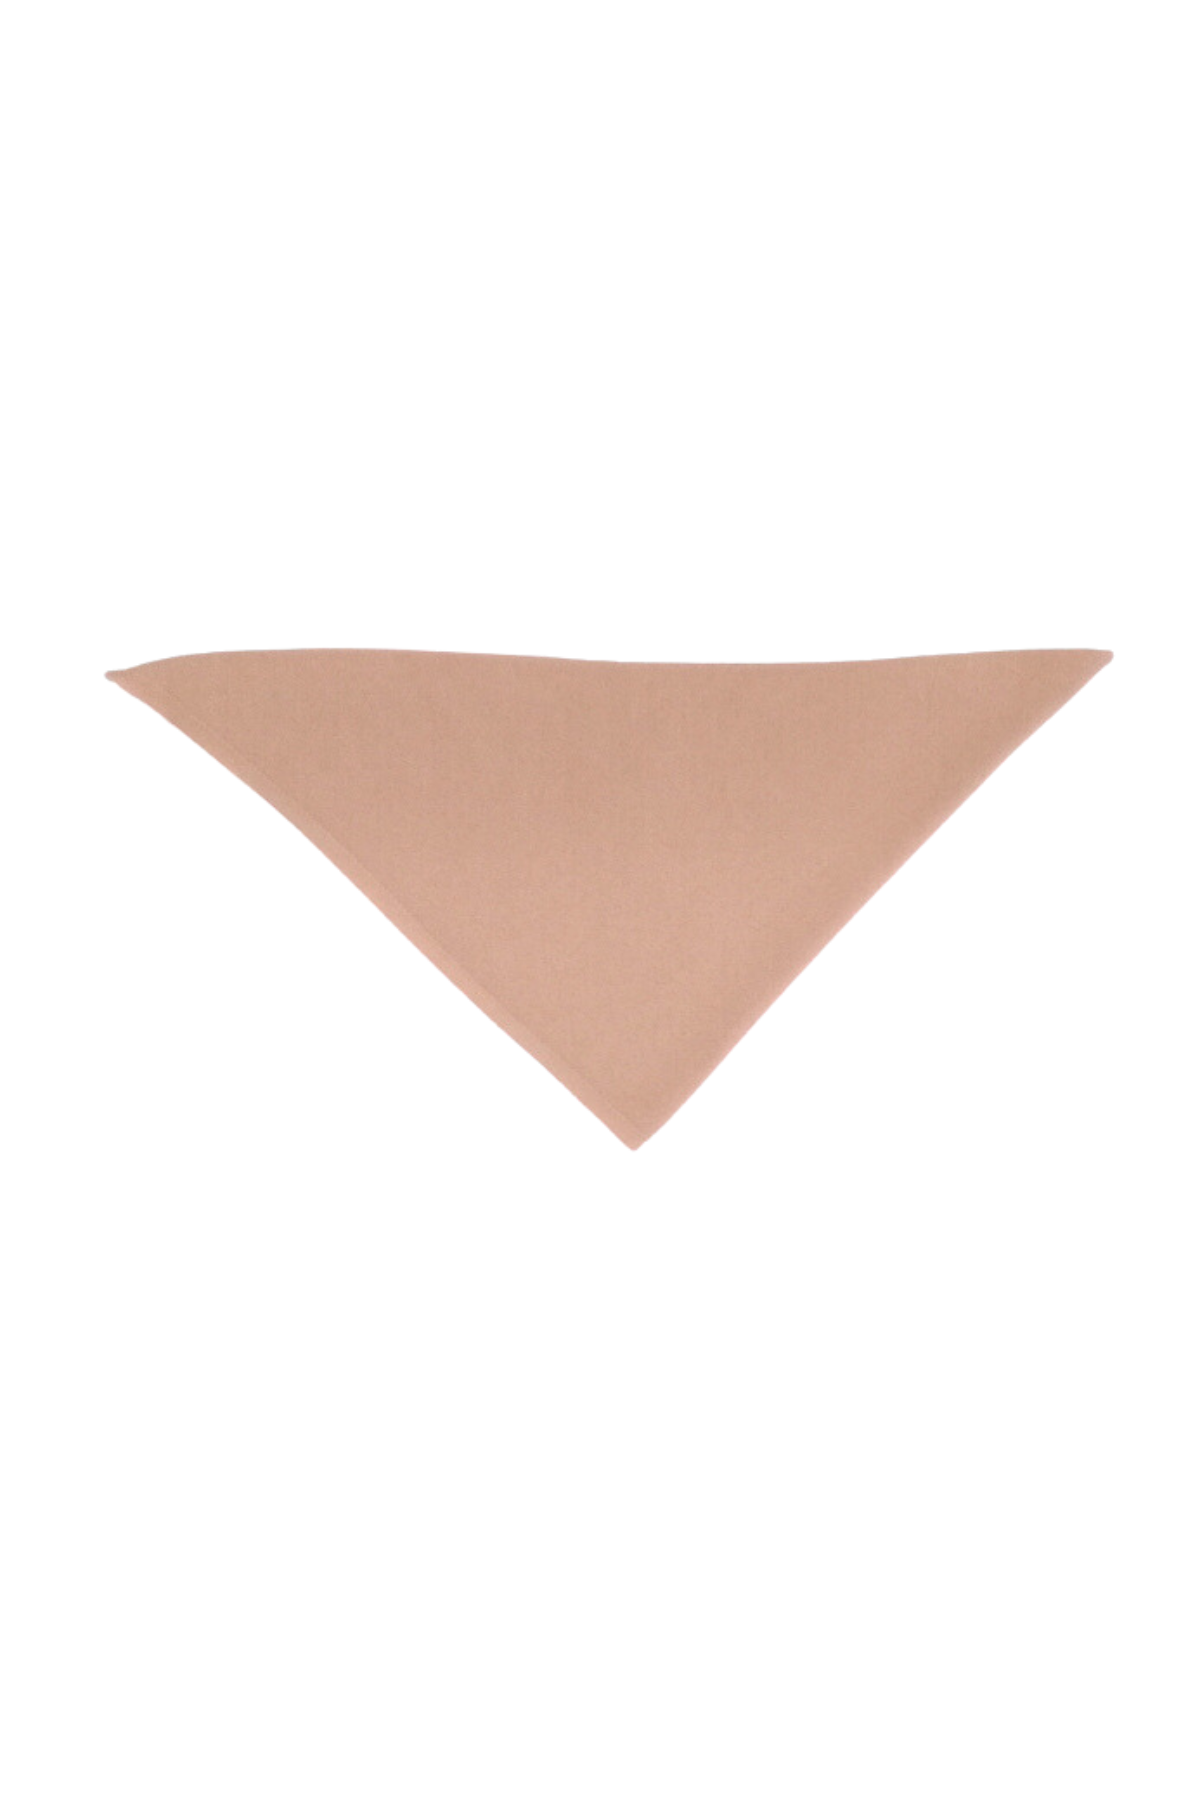 Gestricktes Dreiecks-Halstuch aus Merinowolle | verschiedene Farben